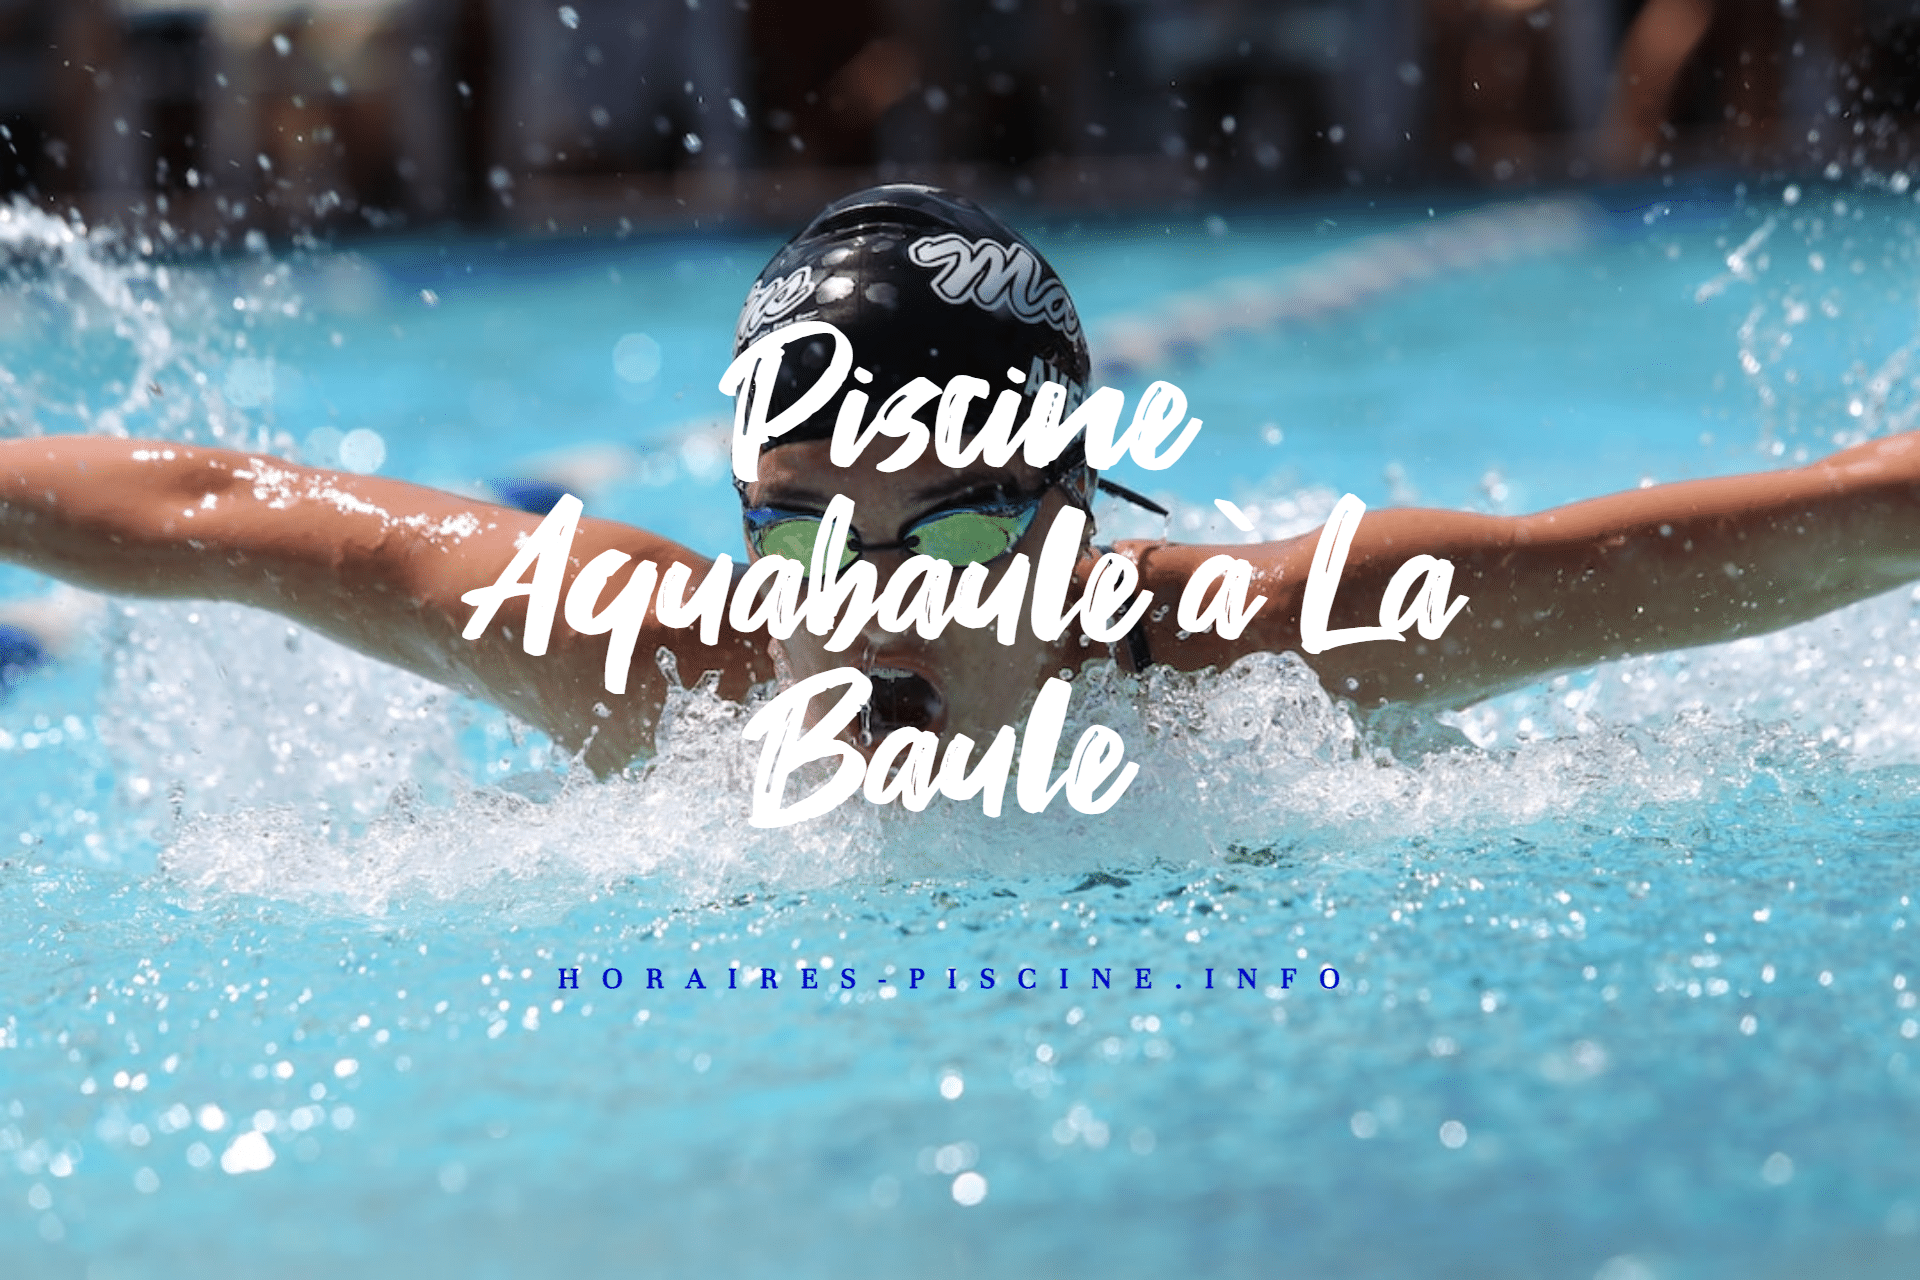 Piscine Aquabaule à La Baule